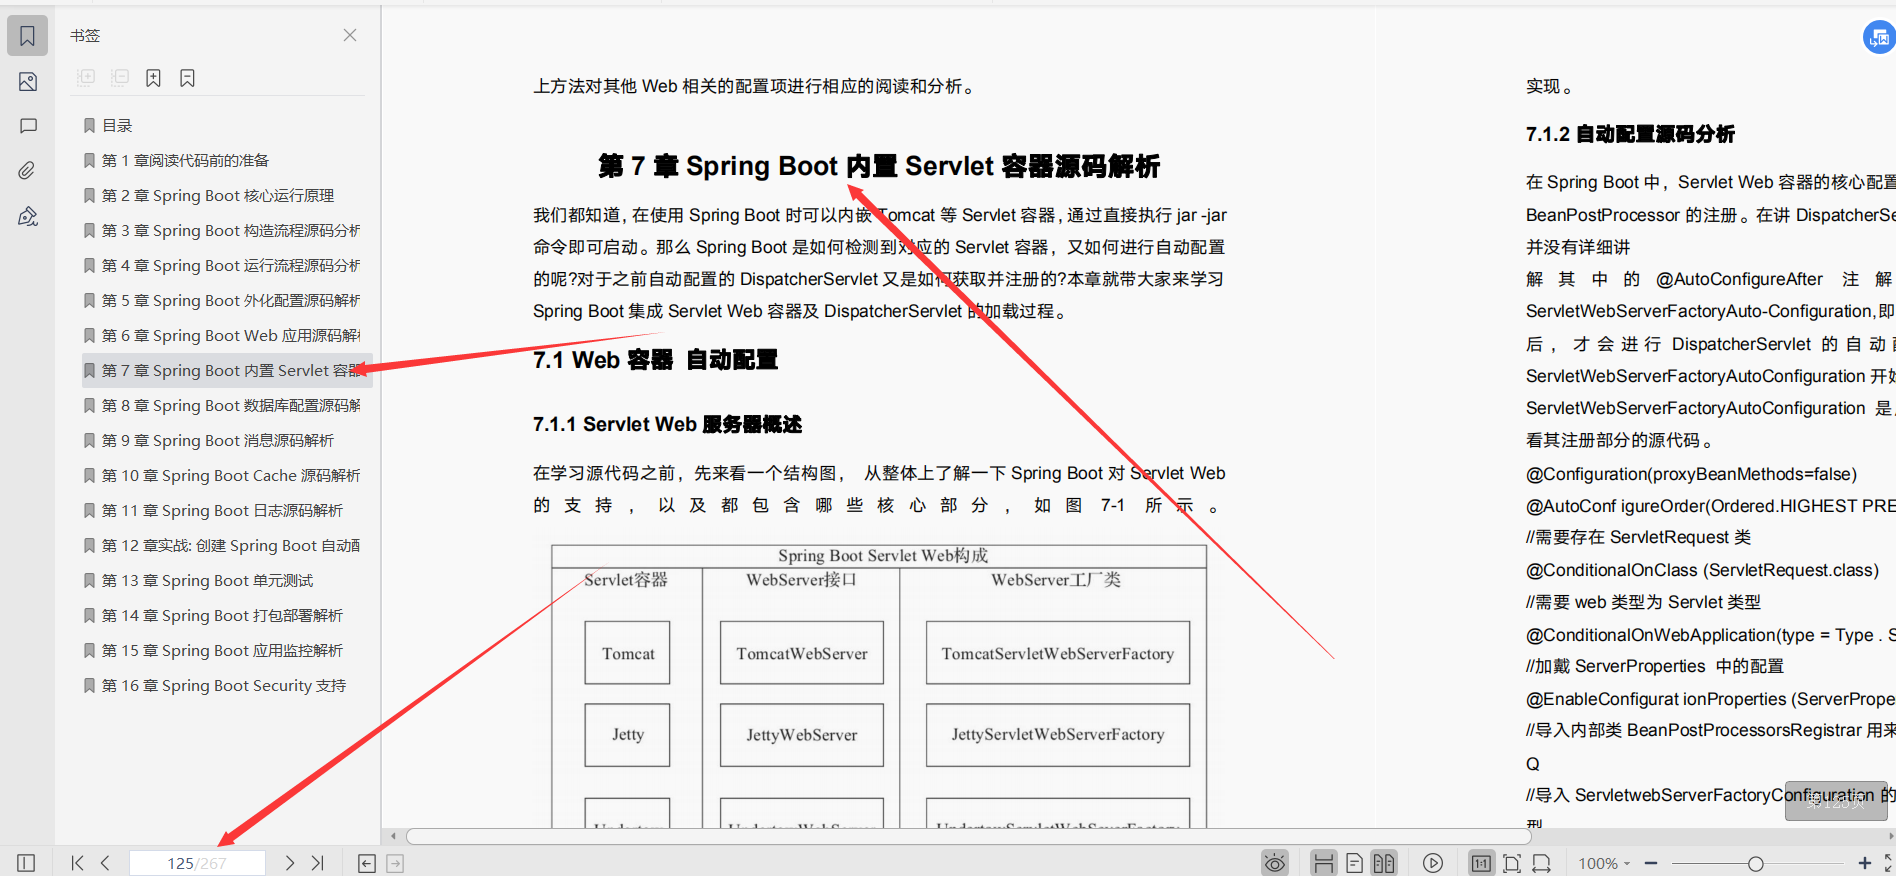 阿里资深架构师推荐内部学习的SpringBoot技术内幕文档